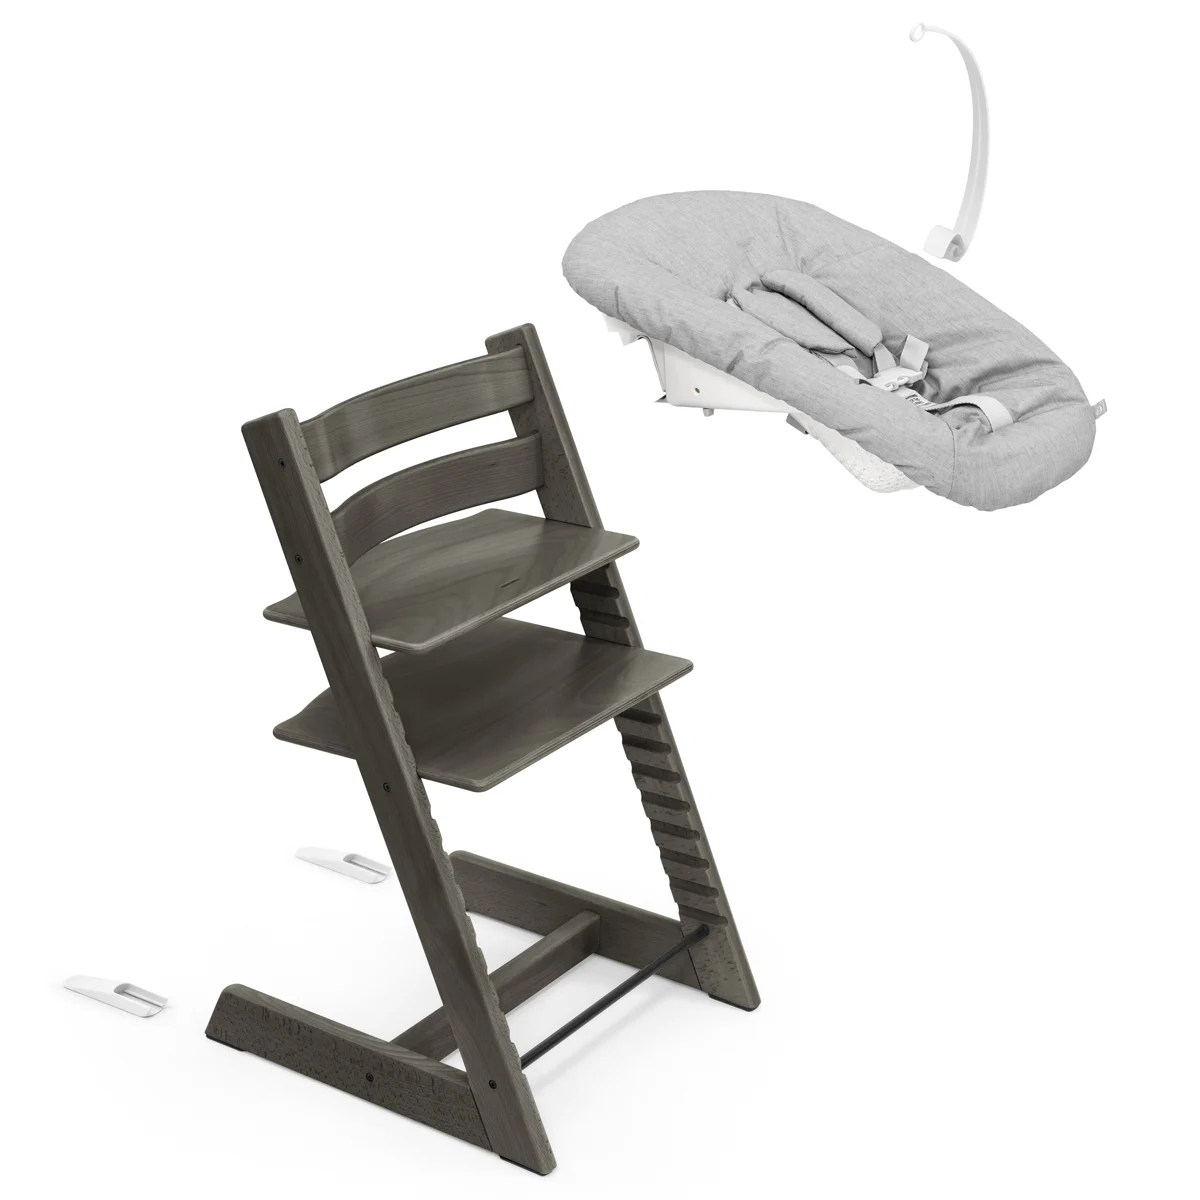 Набор Stokke Newborn Tripp Trapp Hazy Grey: стульчик и кресло для новорожденных (k.100126.52) - фото 2